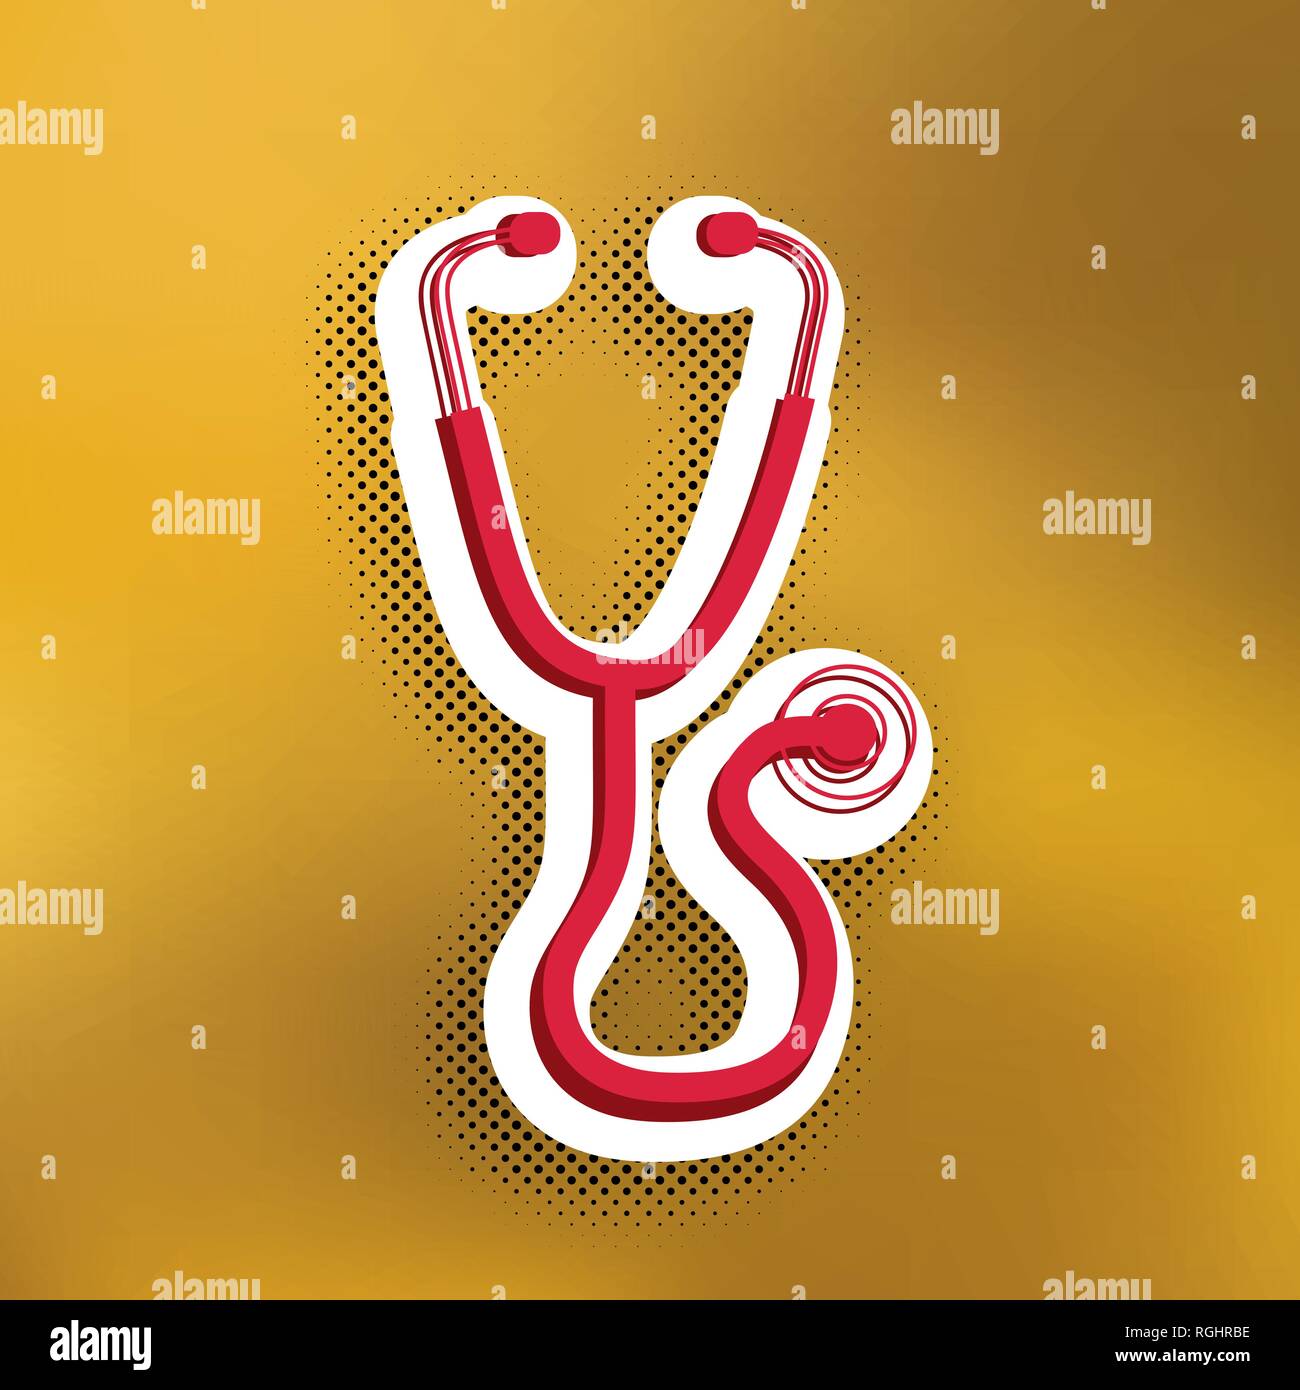 Stethoskop zeichen Abbildung. Vektor. Magenta Symbol mit dunkleren Schatten, weißen Aufkleber und Schwarz popart Schatten auf goldenem Hintergrund. Stock Vektor